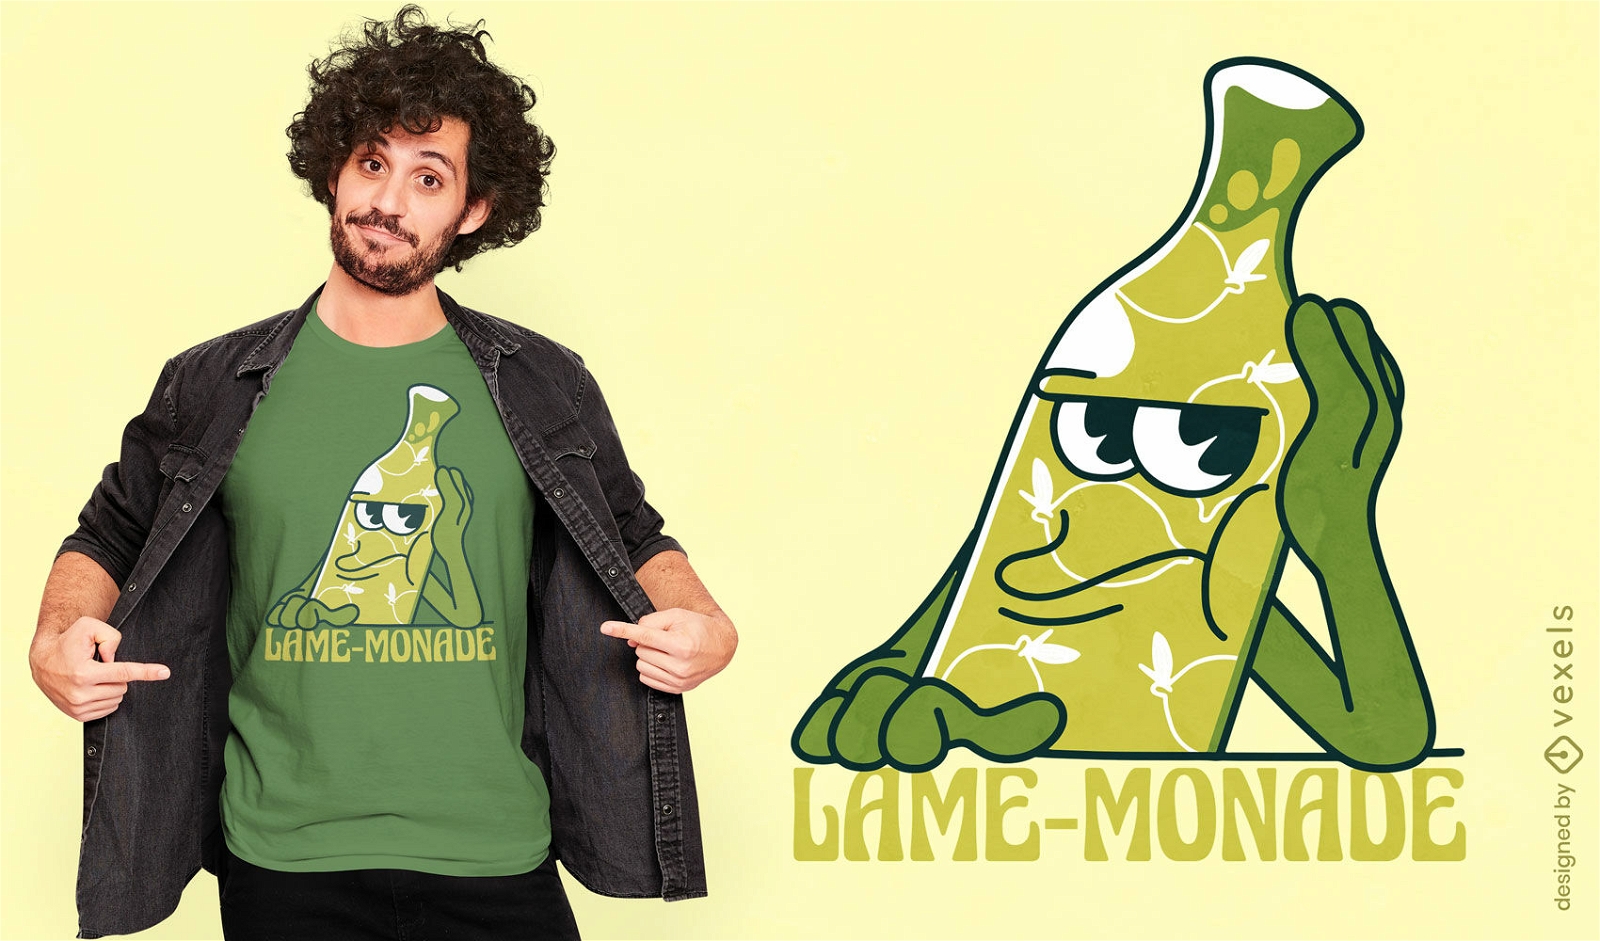 Lame-monade lemonade t-shirt design